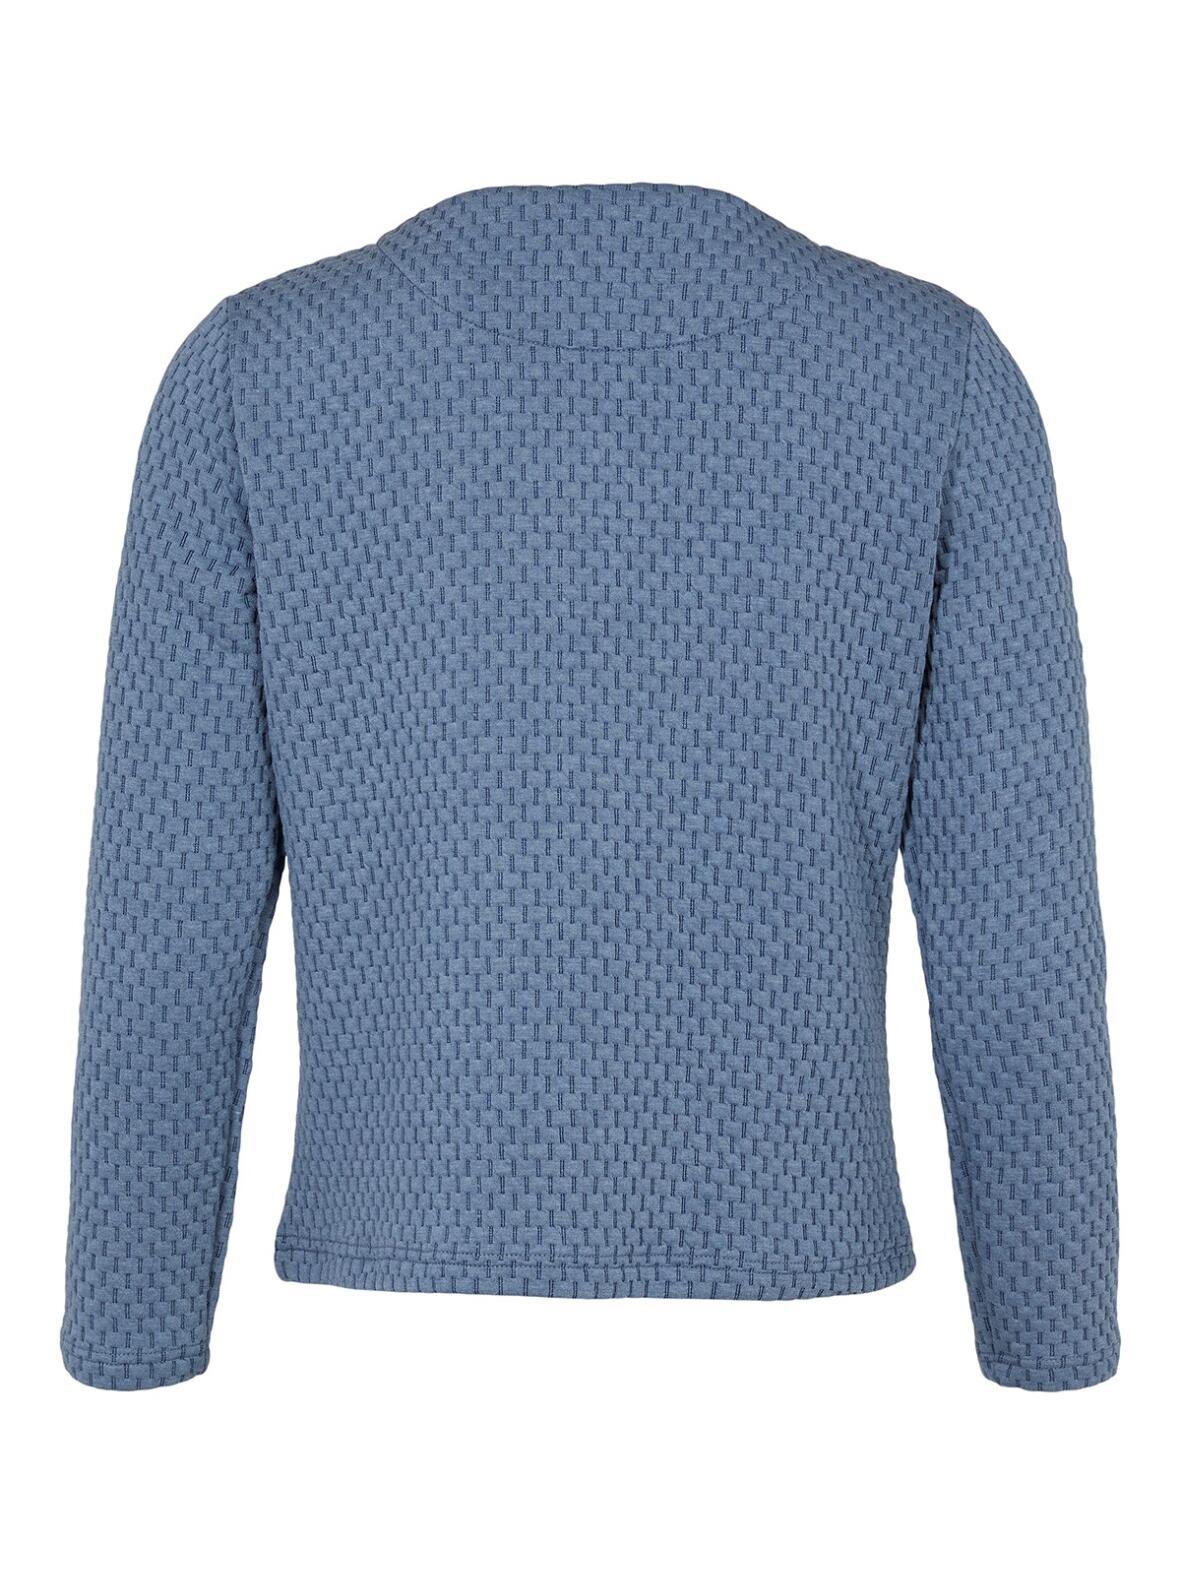 Trafik knude berømmelse Boutique Dorthe - Sunday lyseblå jakke